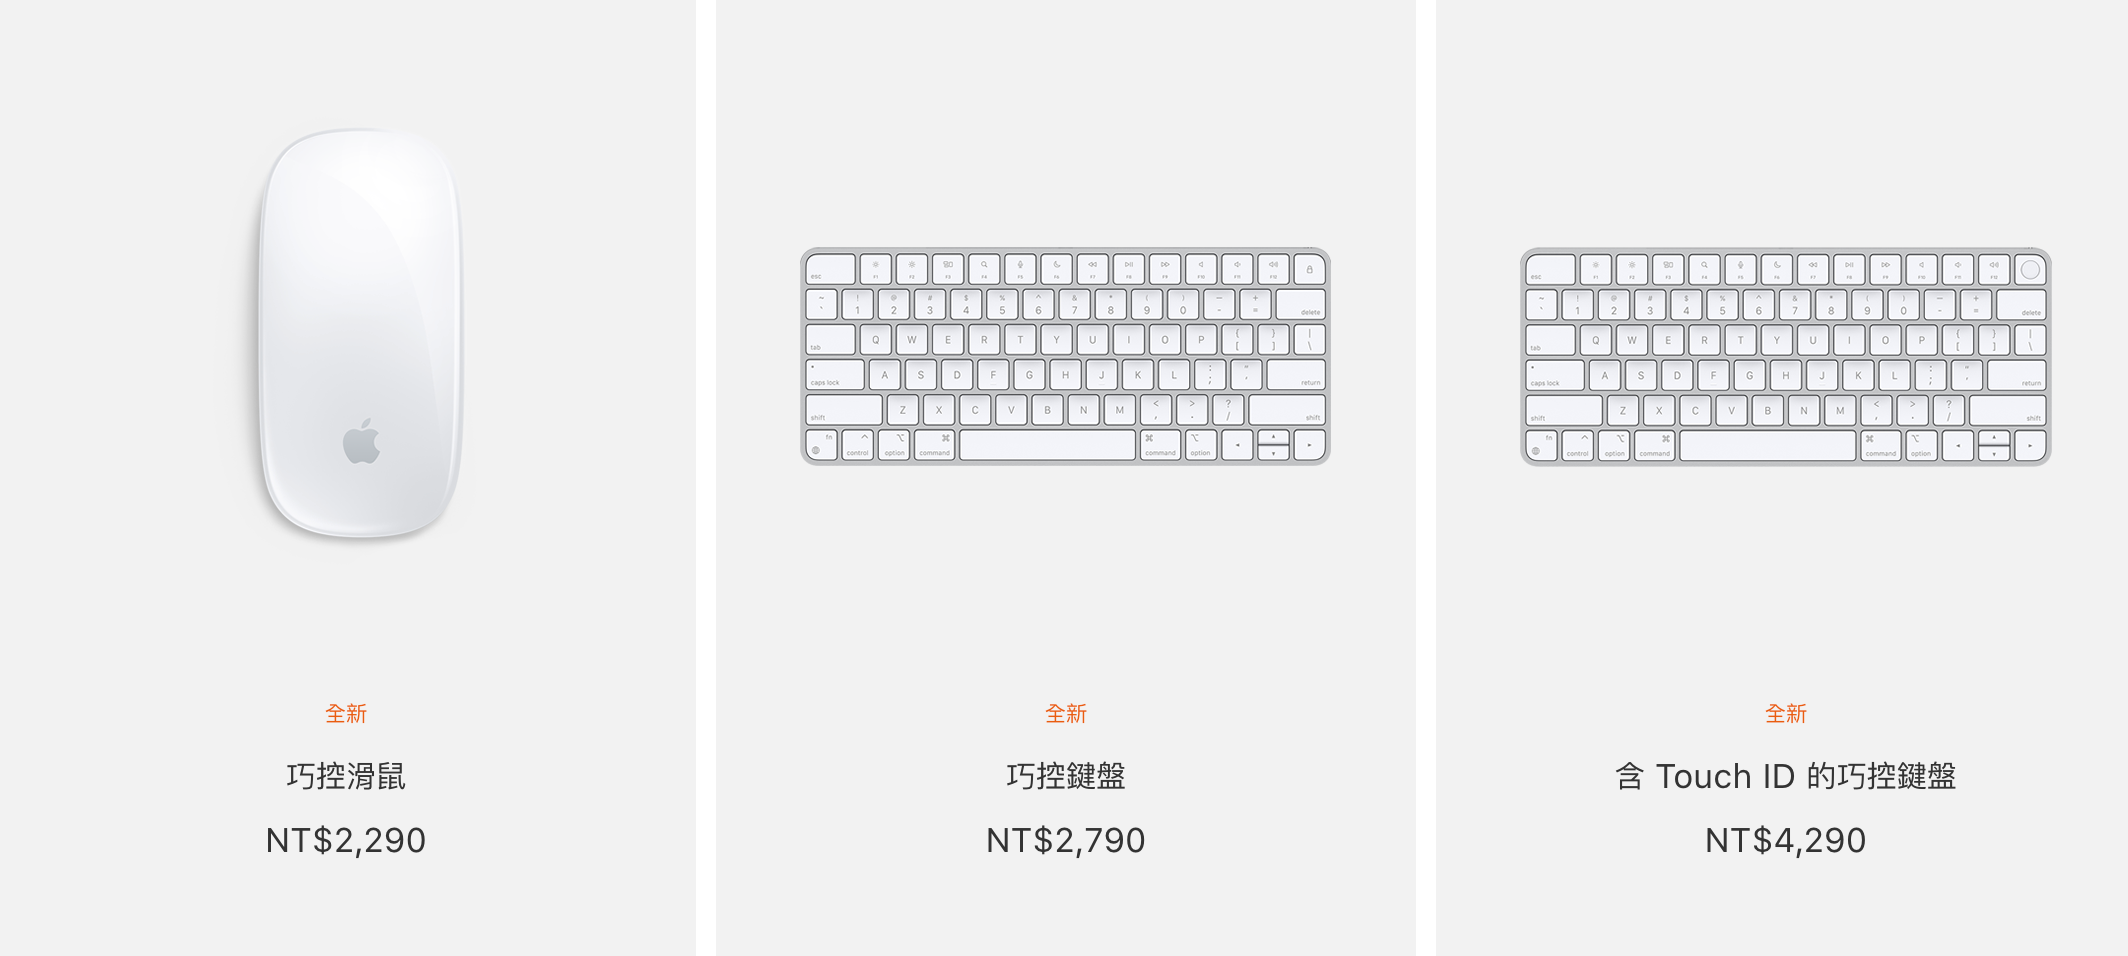 蘋果官網開賣全新巧控滑鼠、觸控板，搭載 Touch ID 的鍵盤也可單買！不過限 M1 Mac 用戶使用